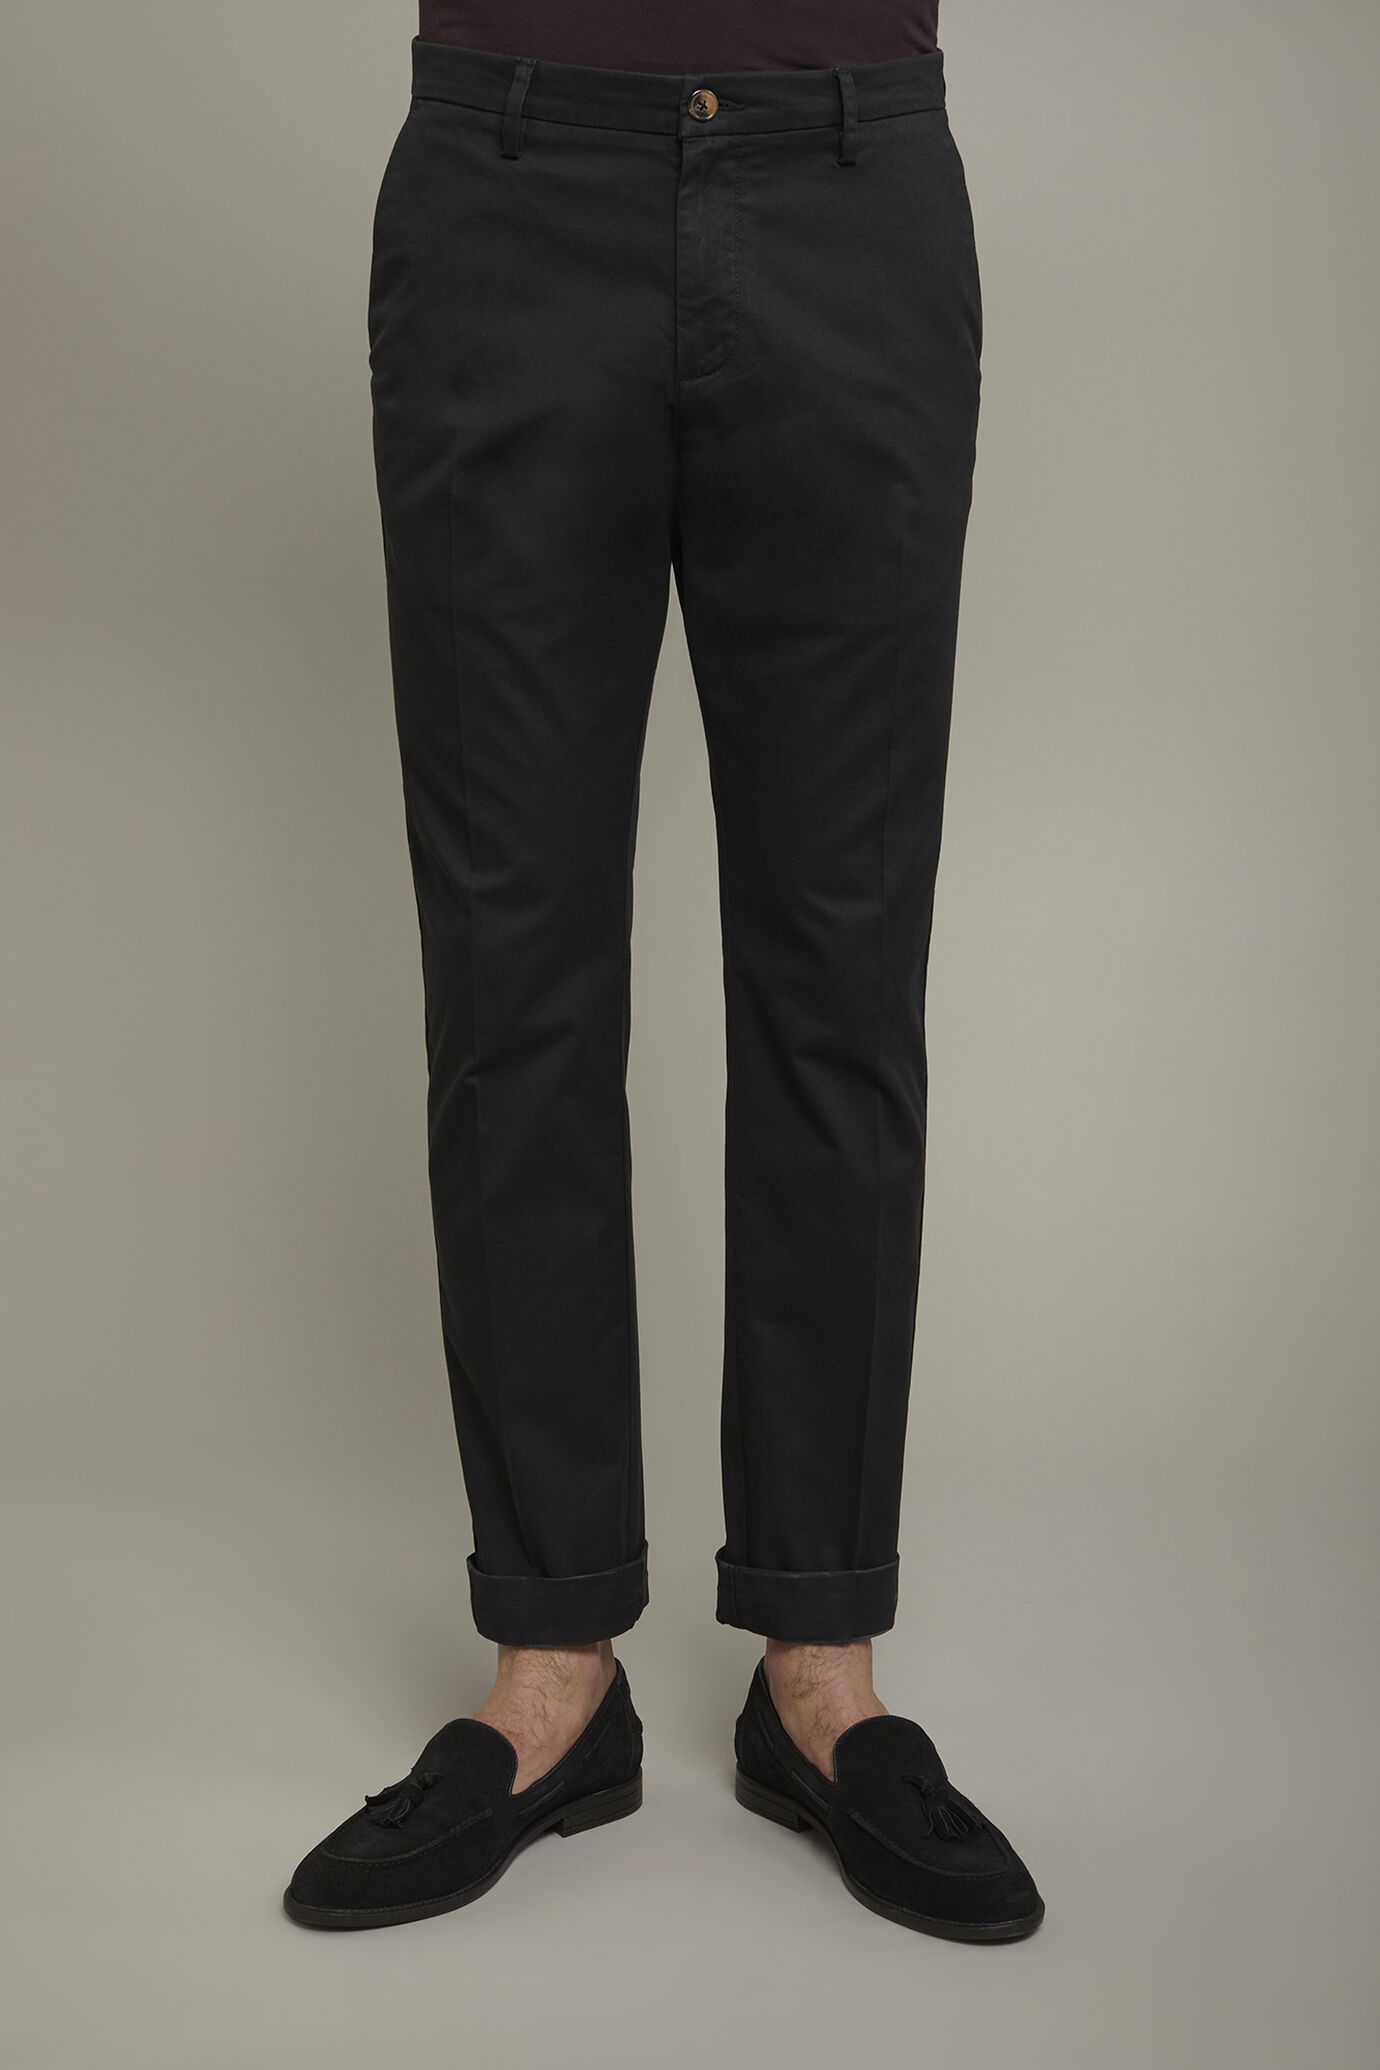 Pantalone chino uomo classico costruzione twill elasticizzato perfect fit image number 3